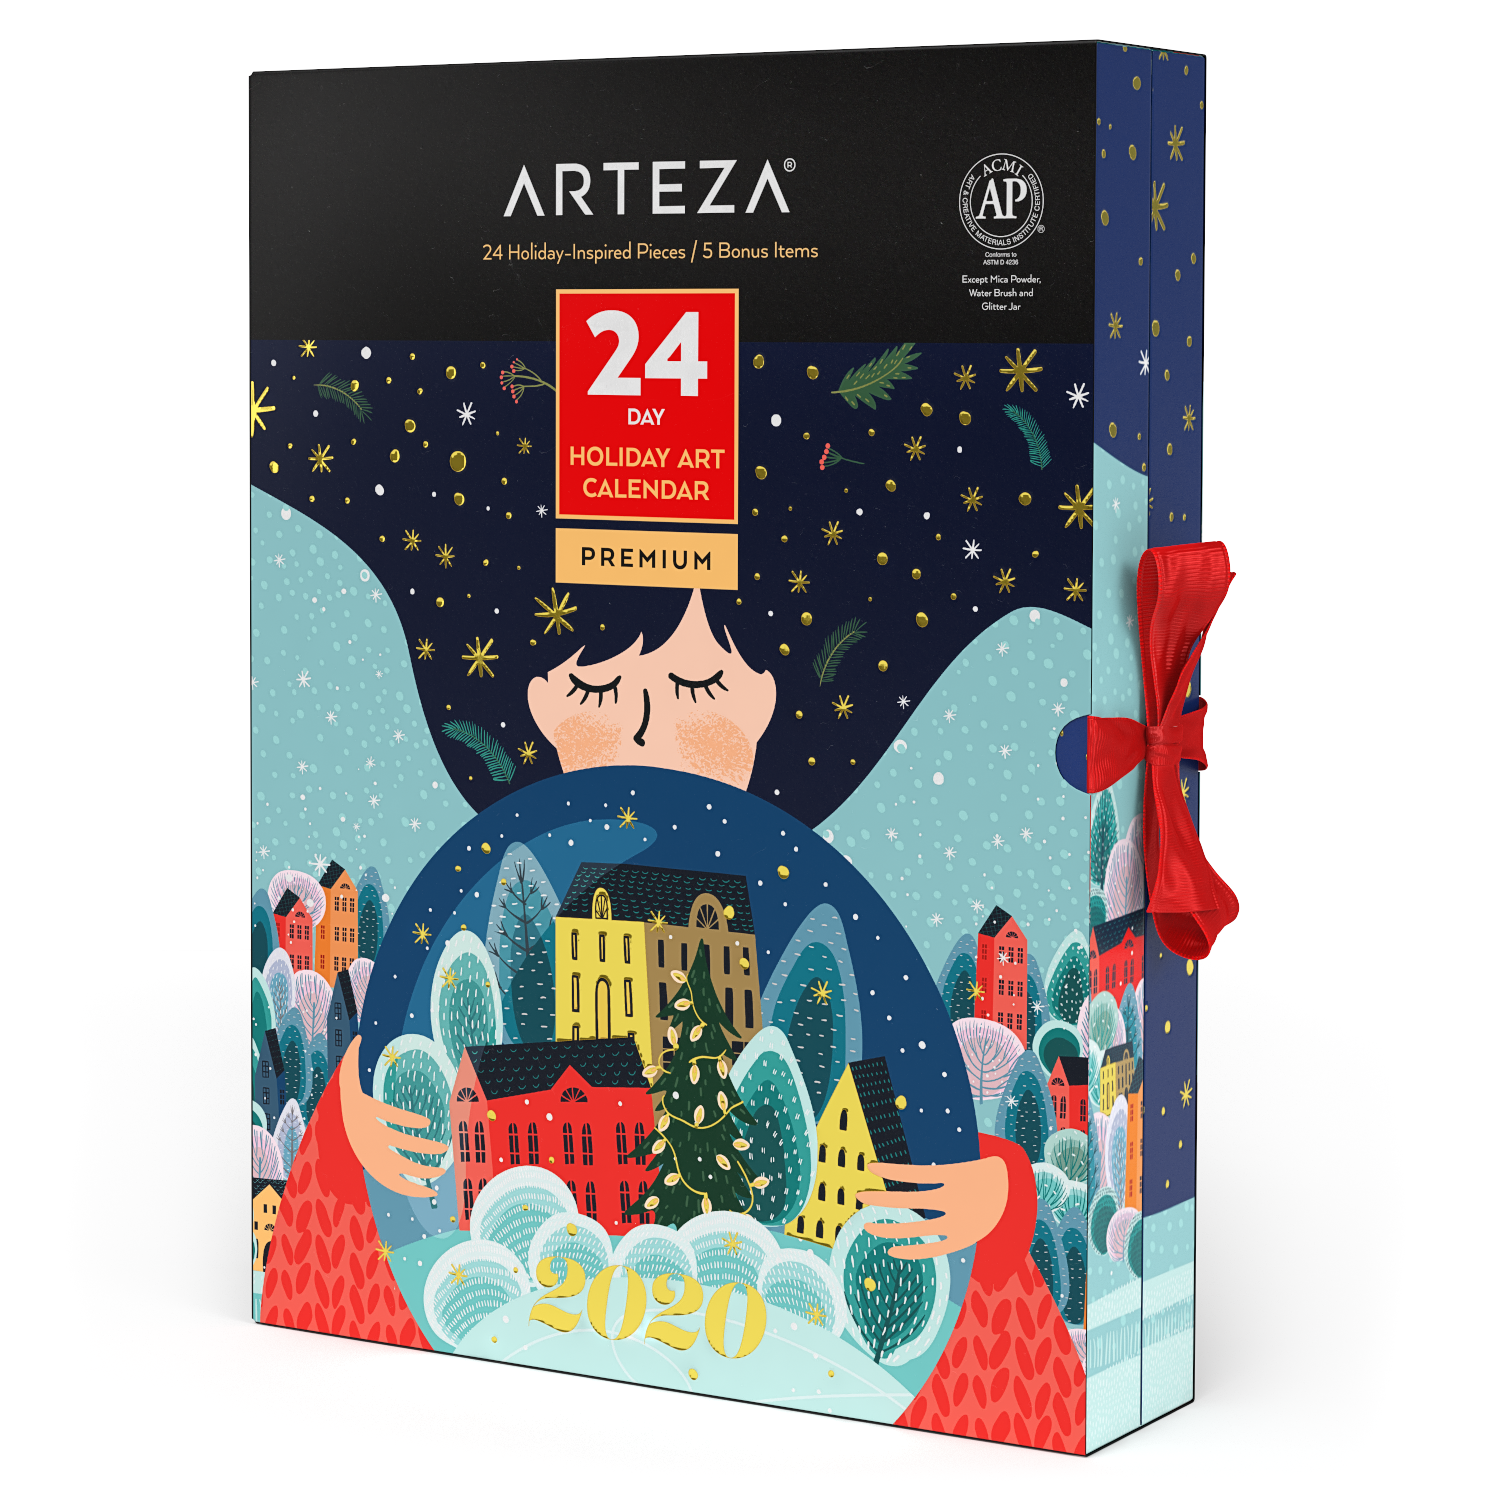 2020 Arteza Art Supplies Advent Calendar Available Now Hello